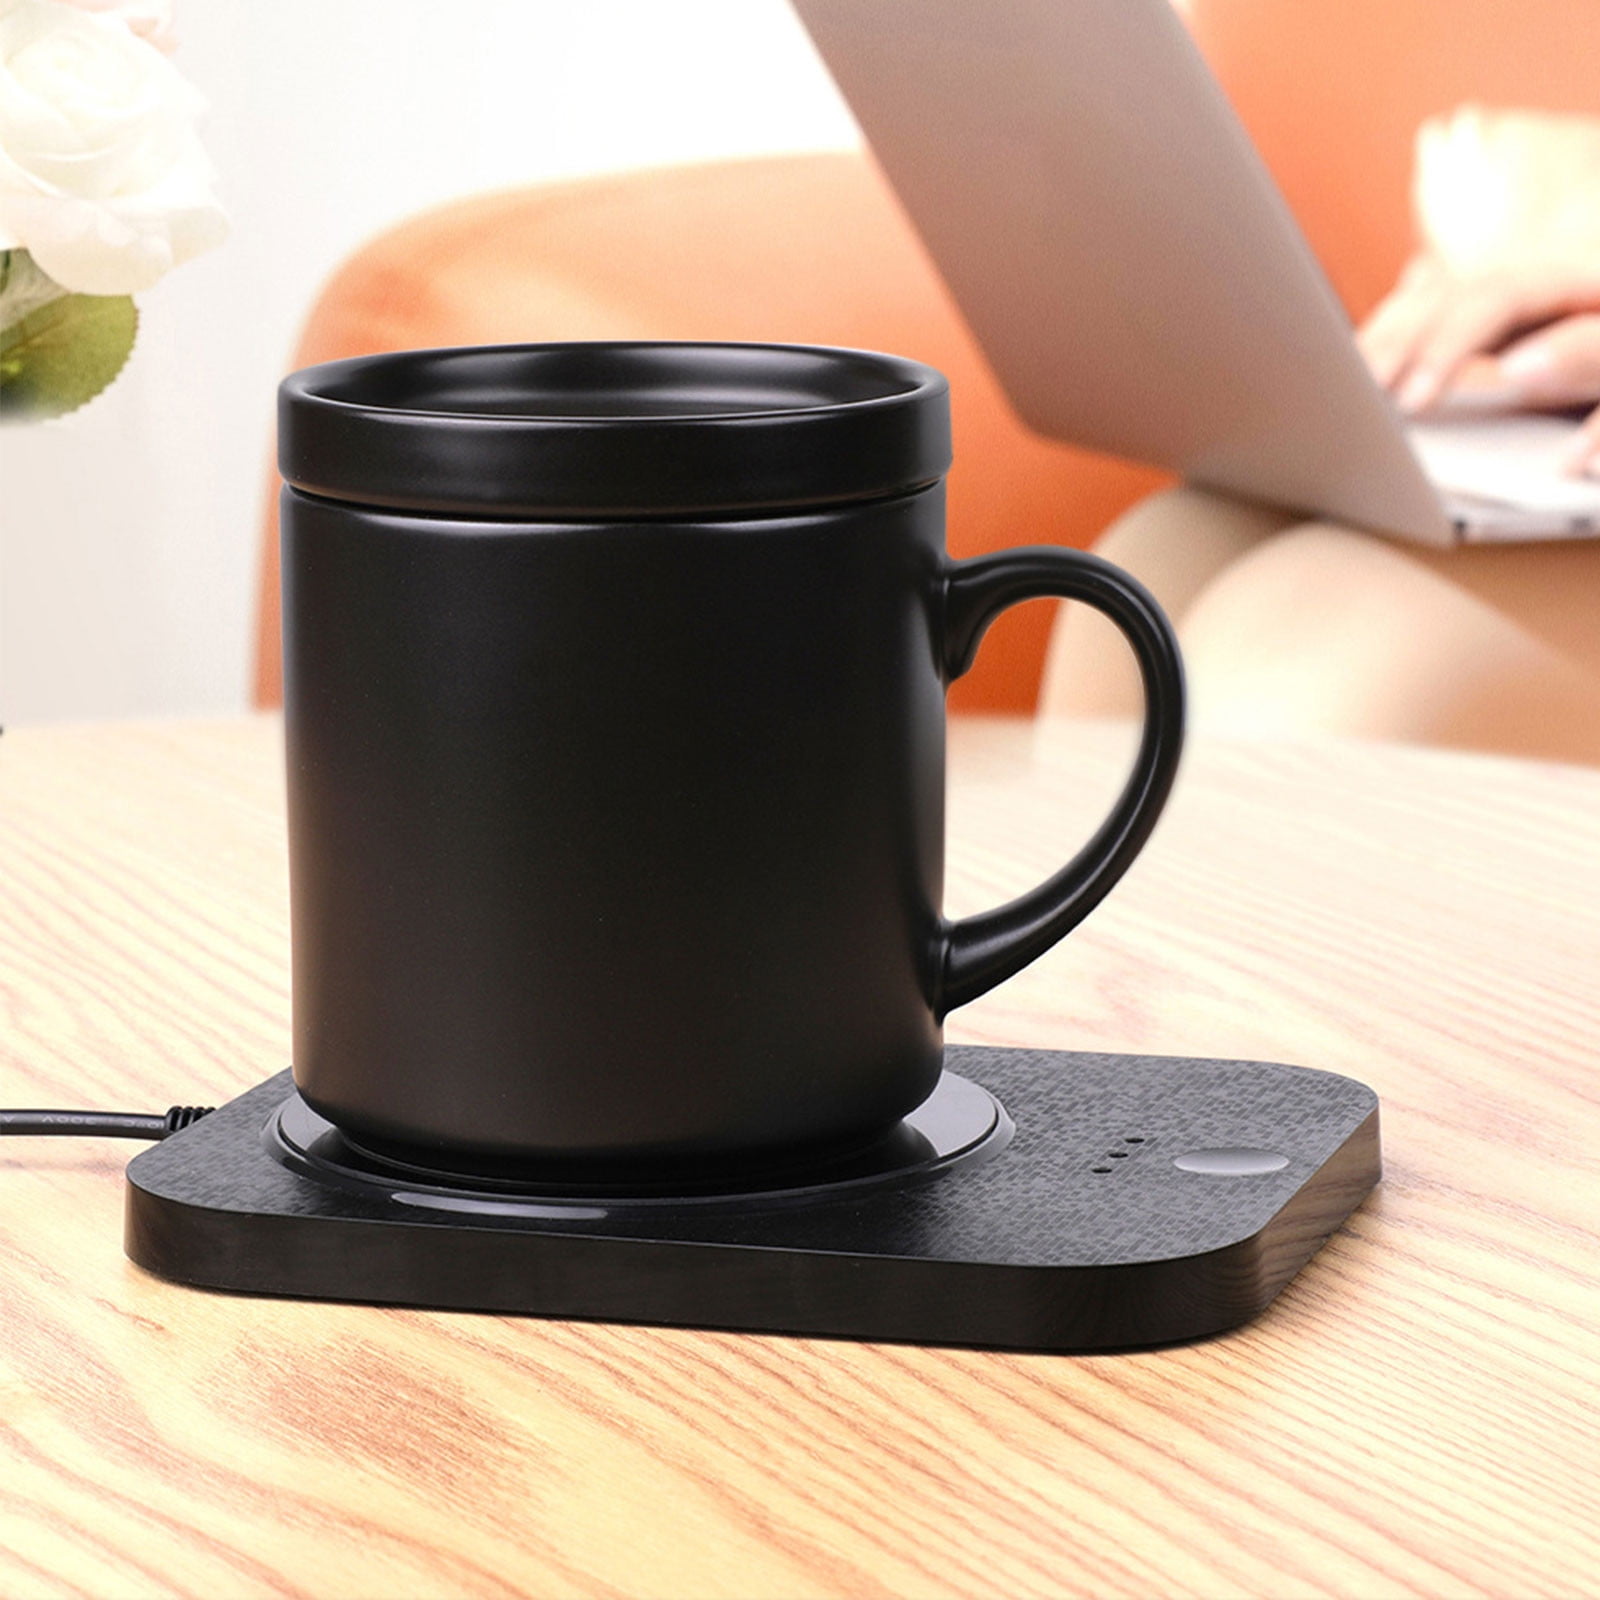 RKSTN Coffee Mug Warmer & Mug Set,Self Heating Mug with Wireless Smart  Charging,Mug with Lid 12oz,Perfect for Desktop Home Office,Gift for Coffee